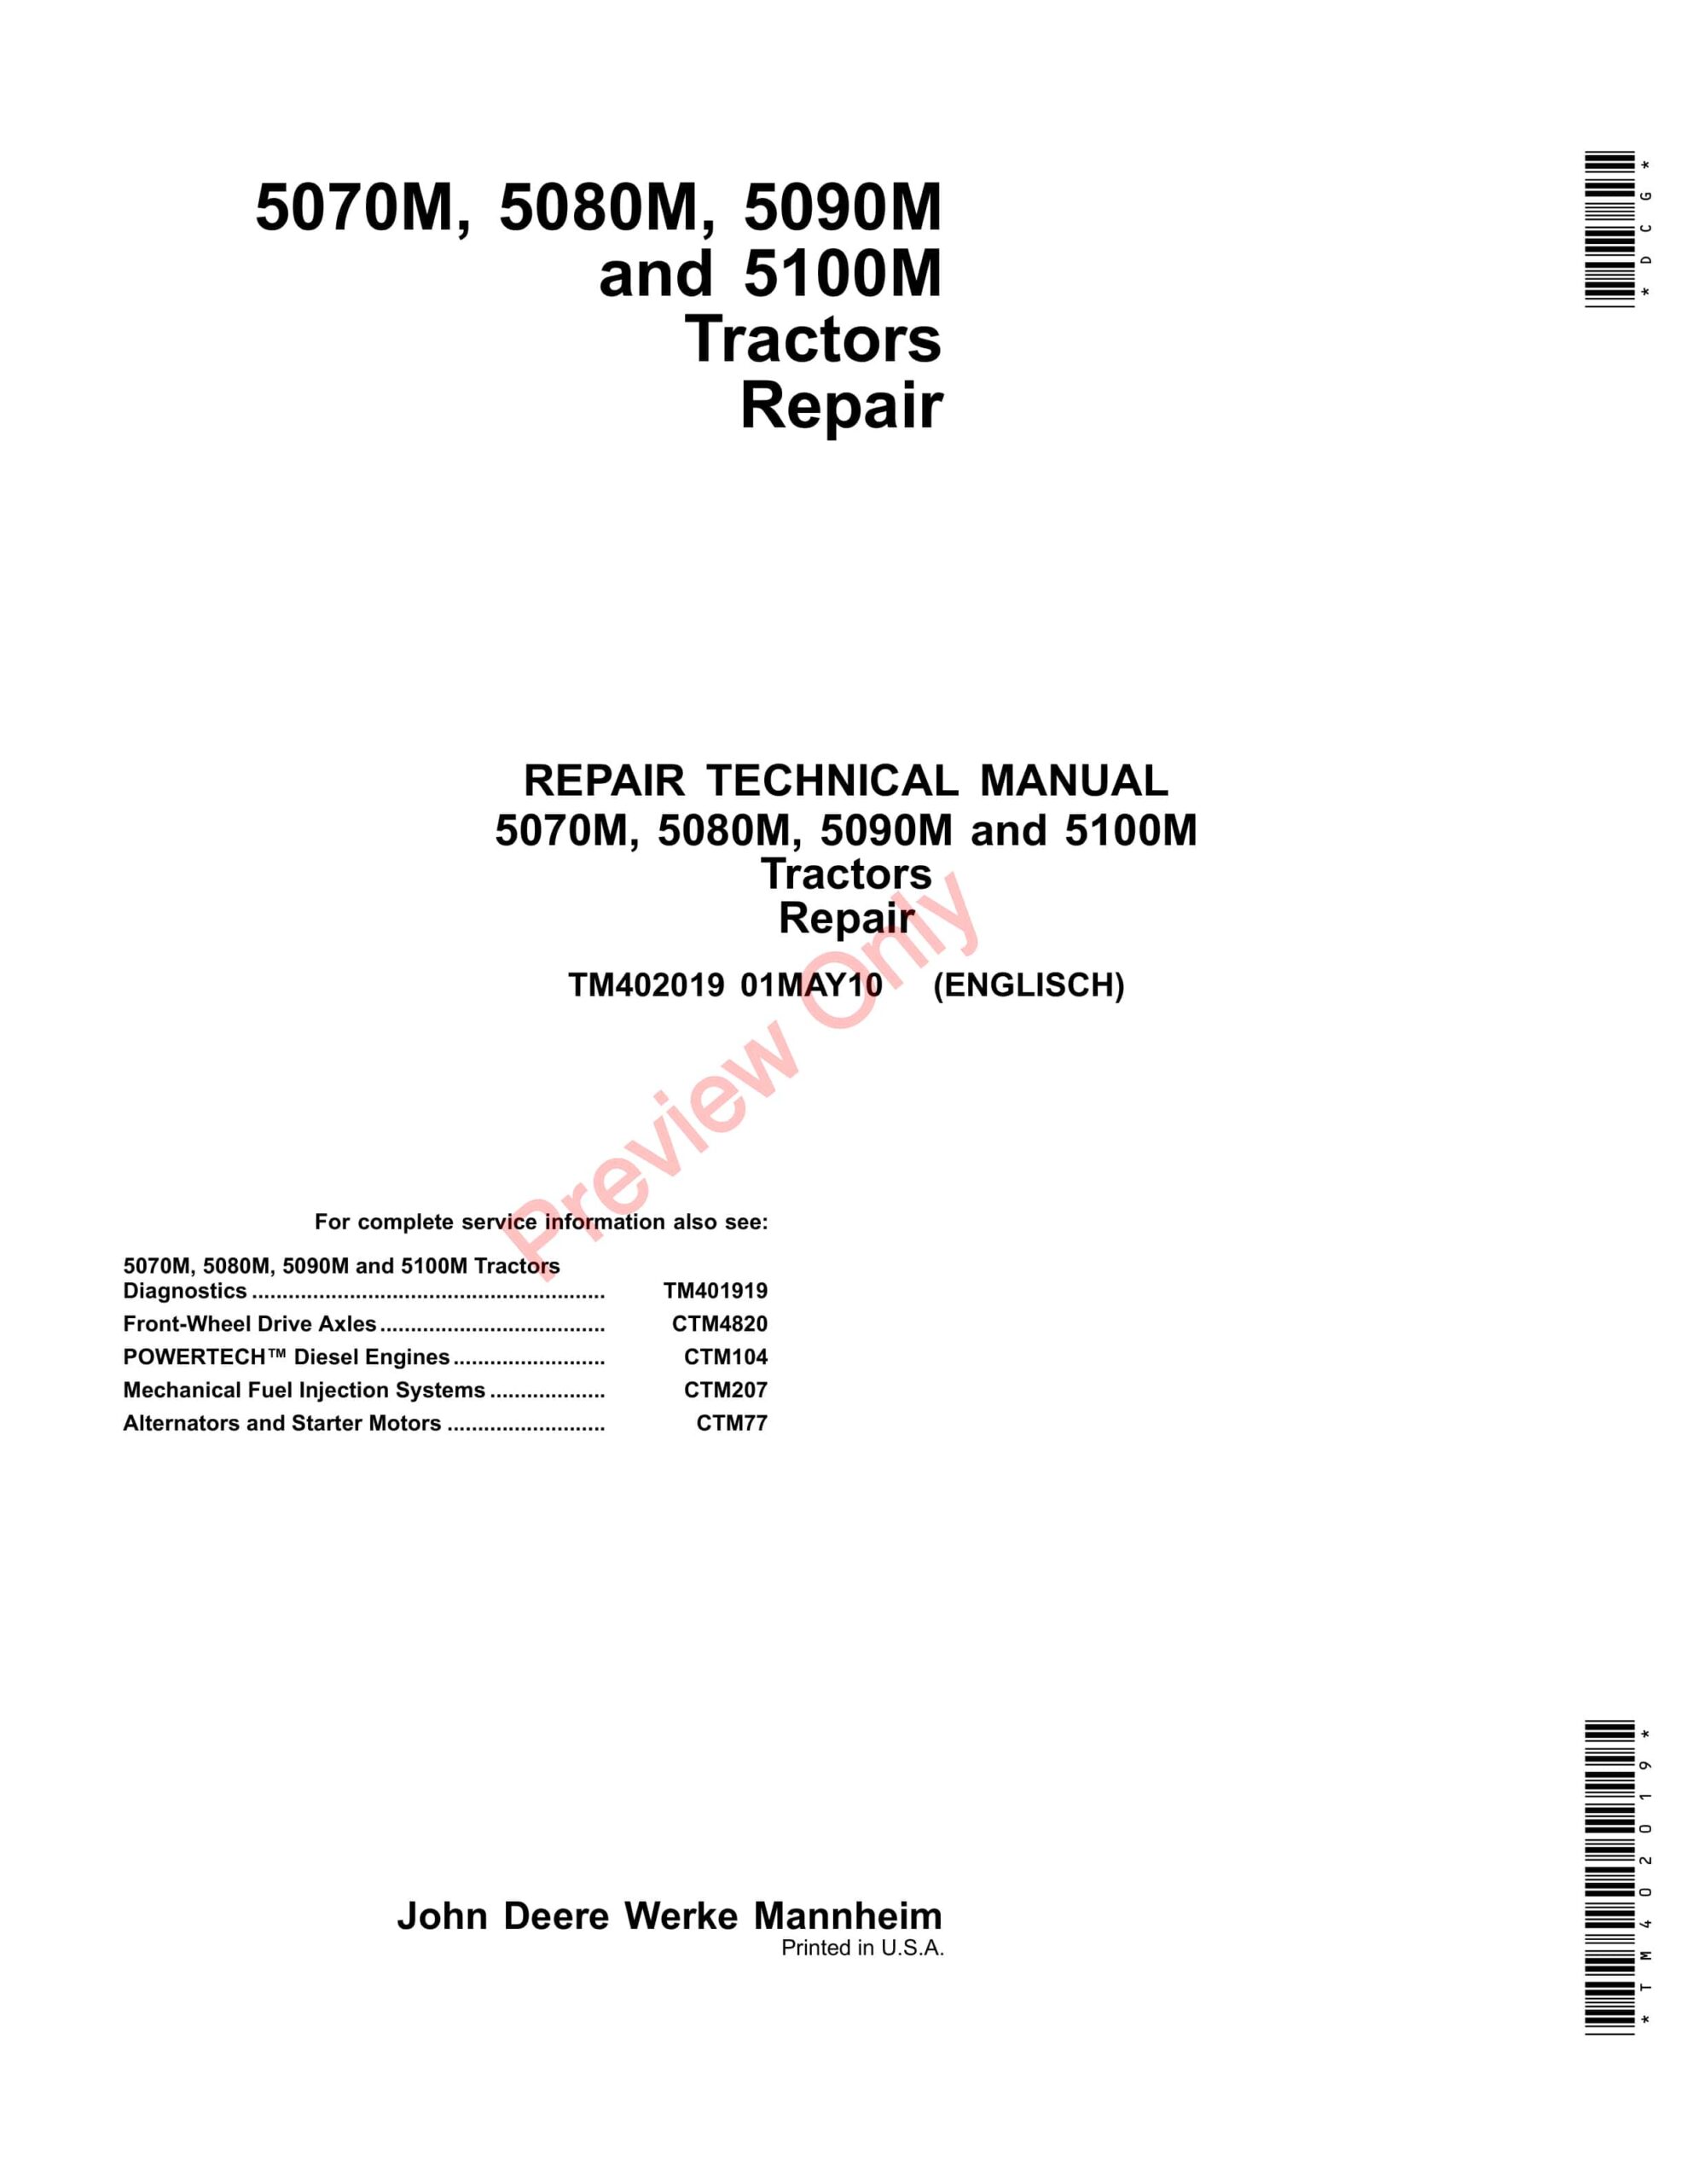 John Deere 5070M, 5080M, 5090M and 5100M Tractors Repair Technical Manual TM402019 01MAY10-1